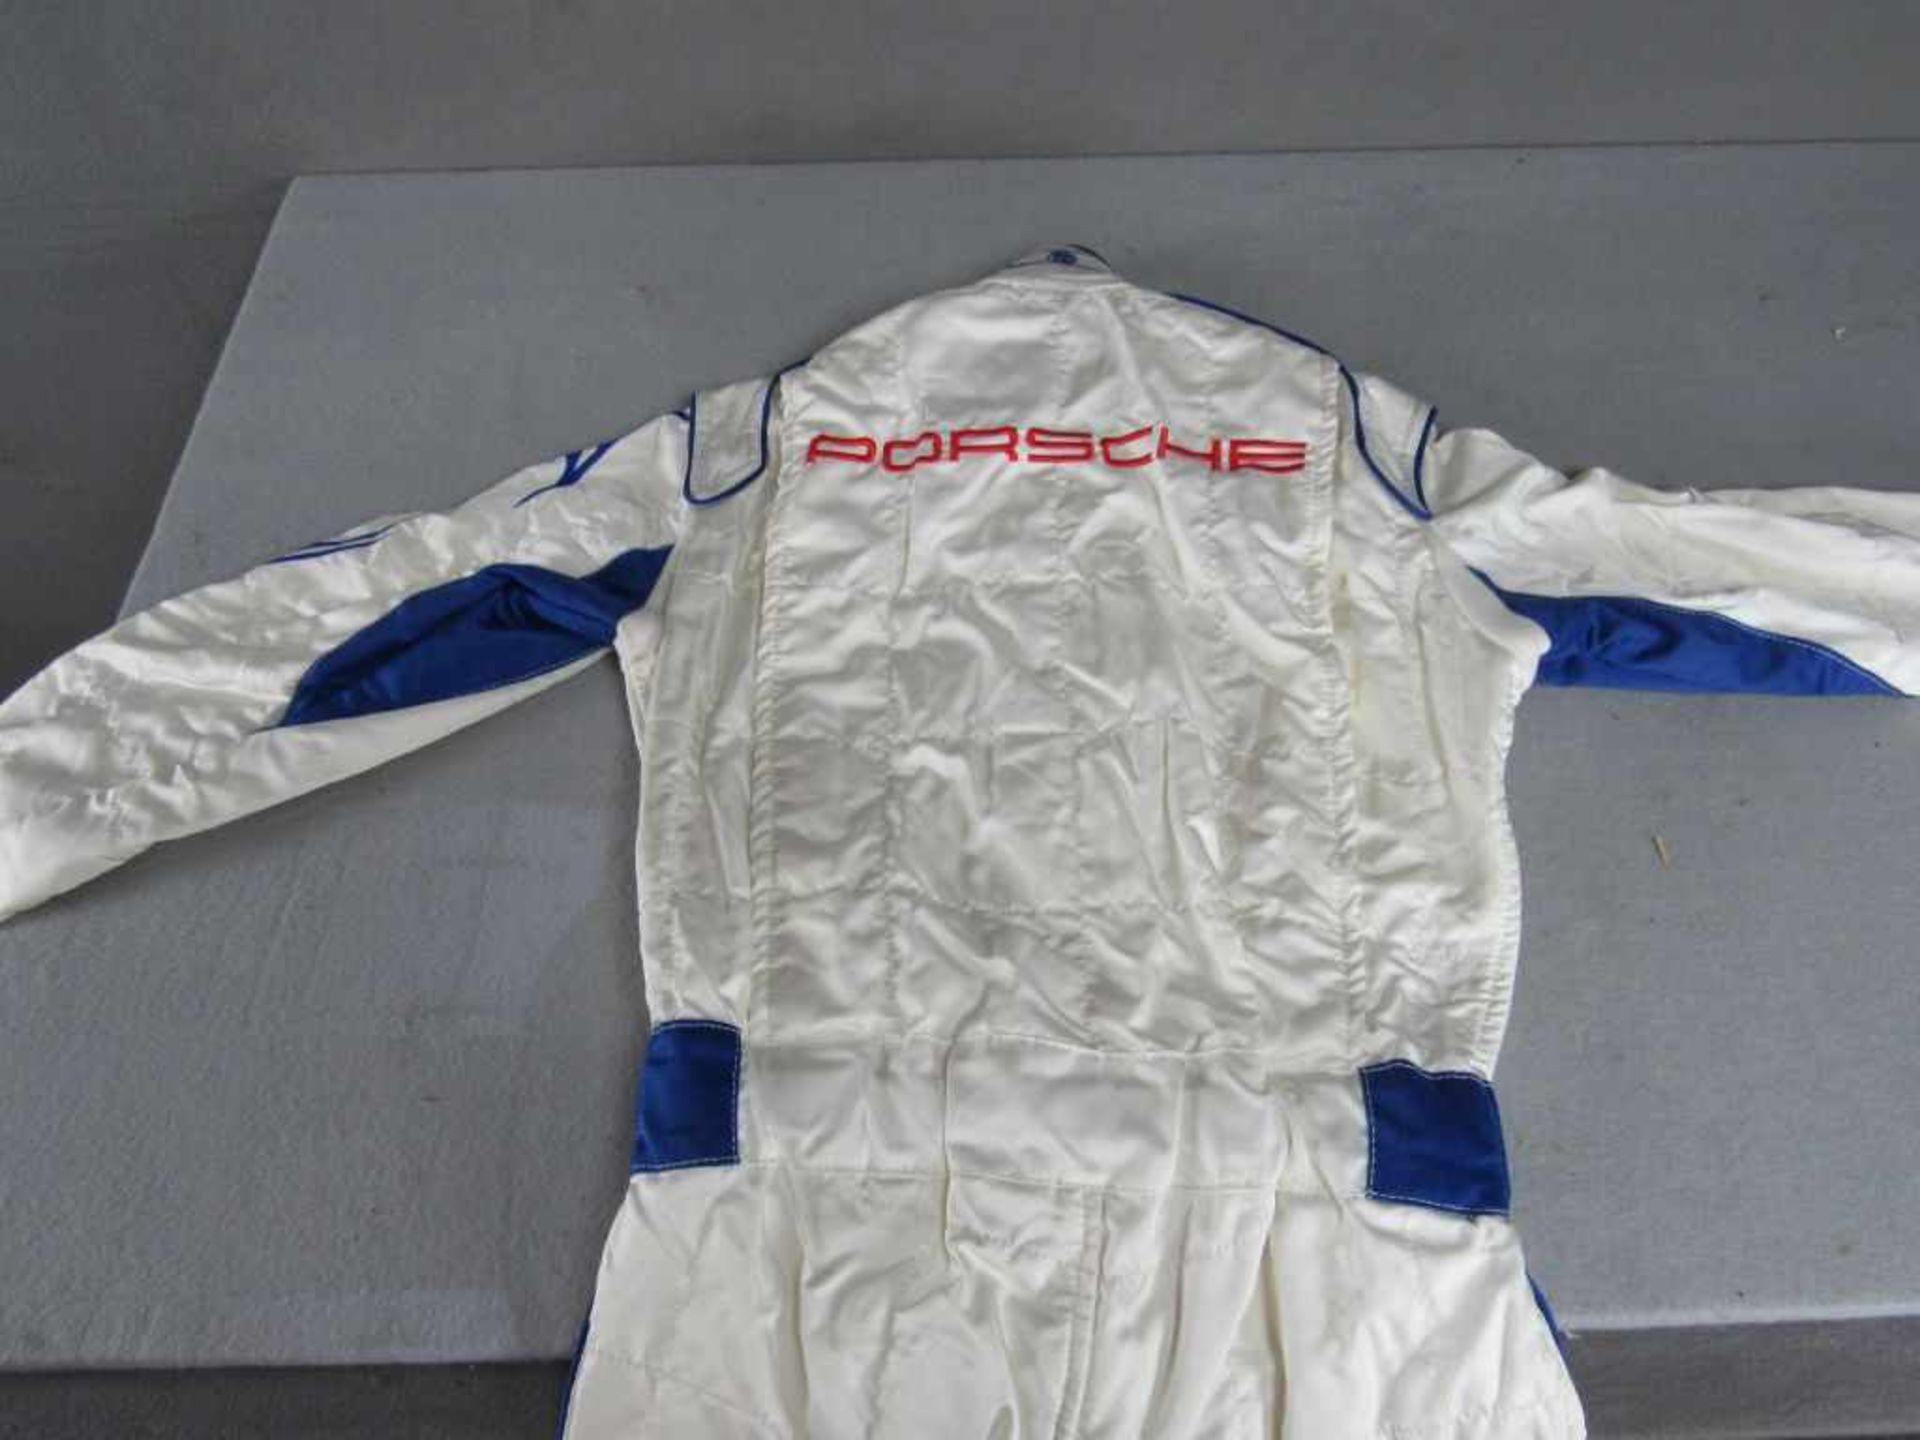 Rennkombi Porsche Autorennen 100% originales Stück 1x getragen sehr guter Zustand- - -20.00 % - Image 5 of 6